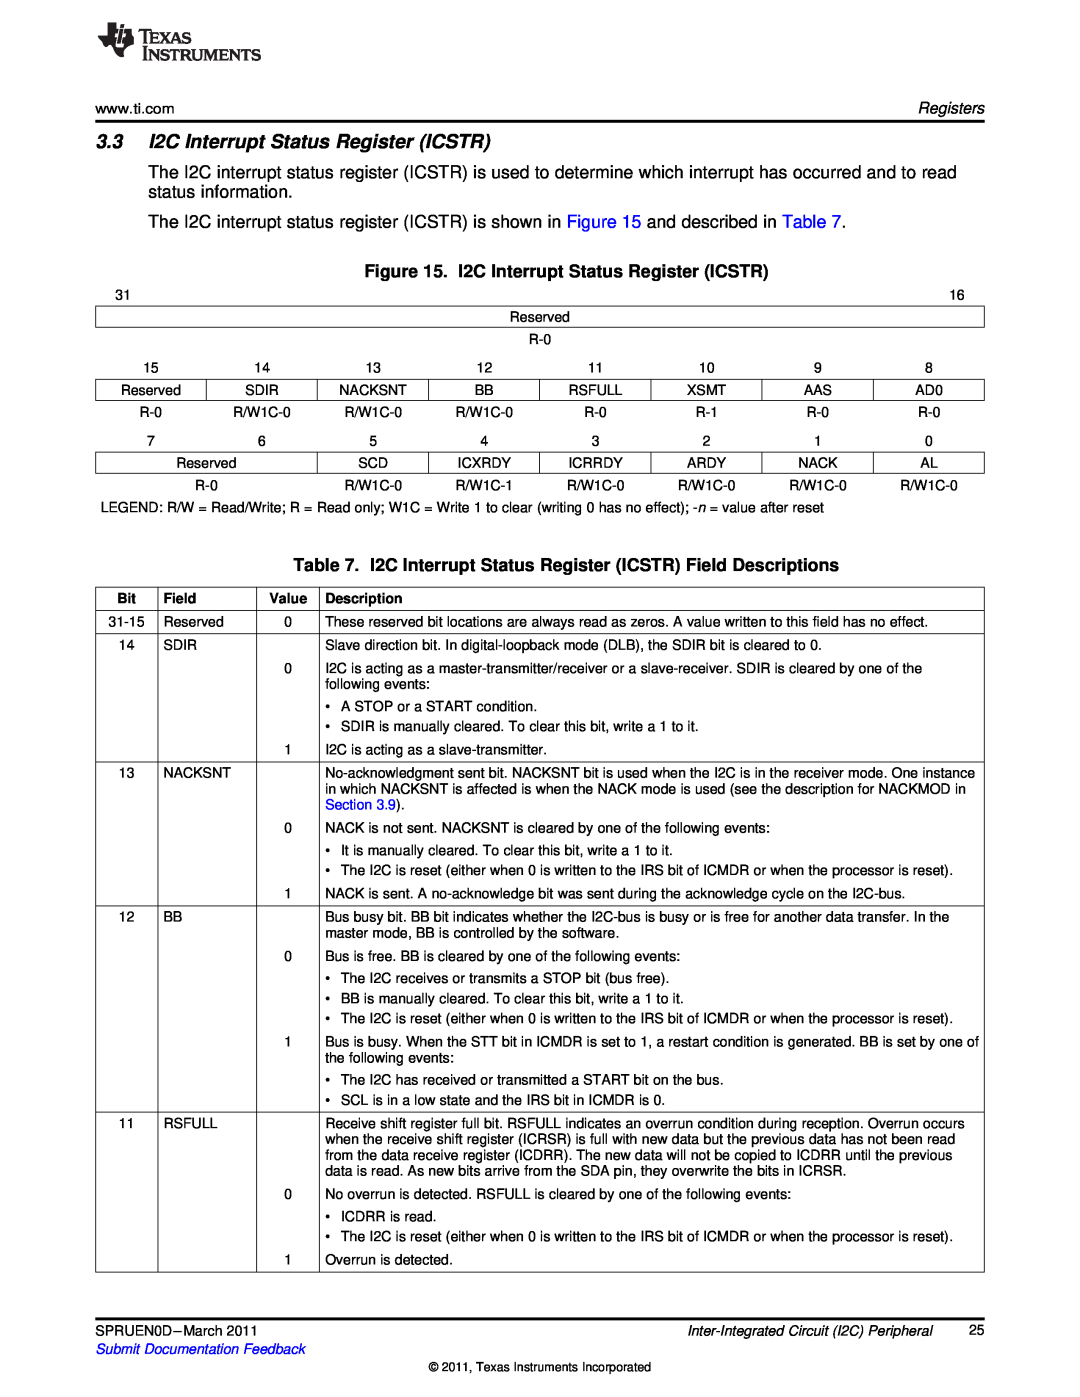 Texas Instruments TMS320C642X manual 3.3I2C Interrupt Status Register ICSTR 